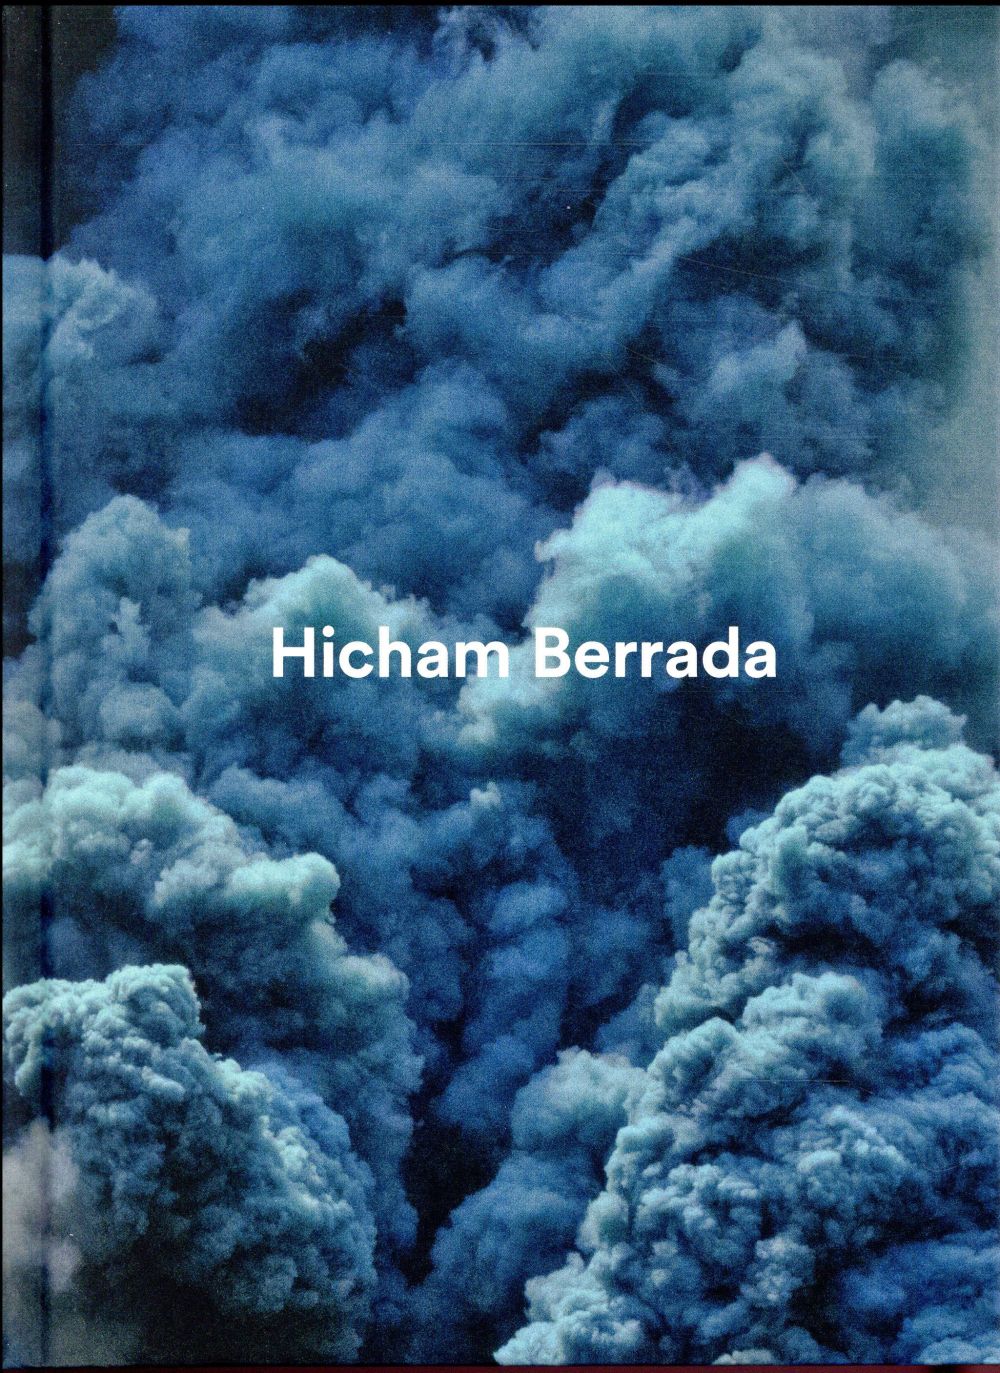 HICHAM BERRADA